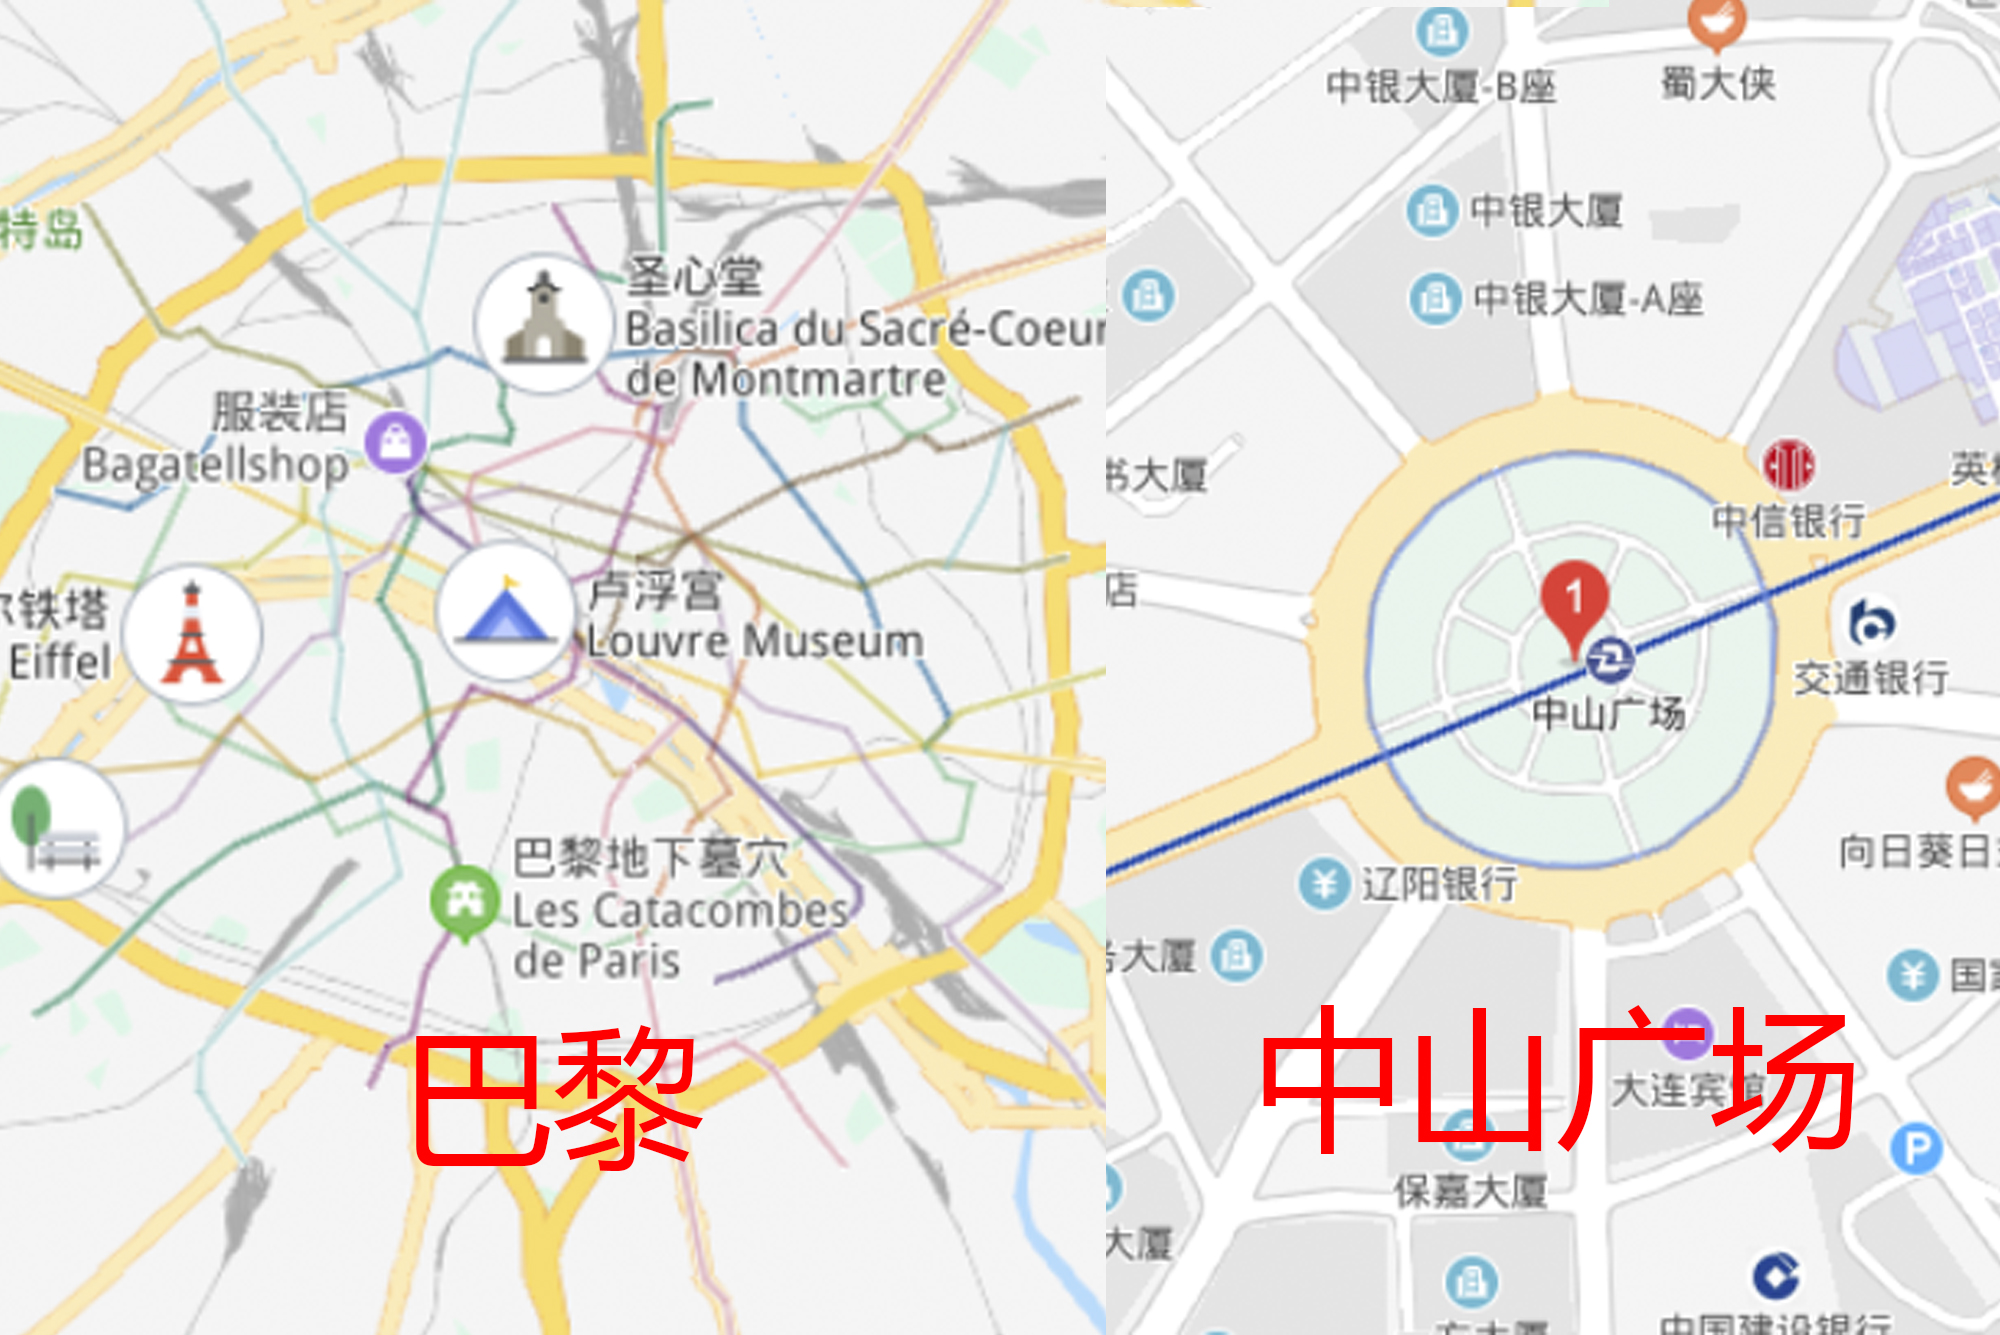 中山广场位于辽宁省大连市中山区的中心位置,如果你打开法国首都巴黎